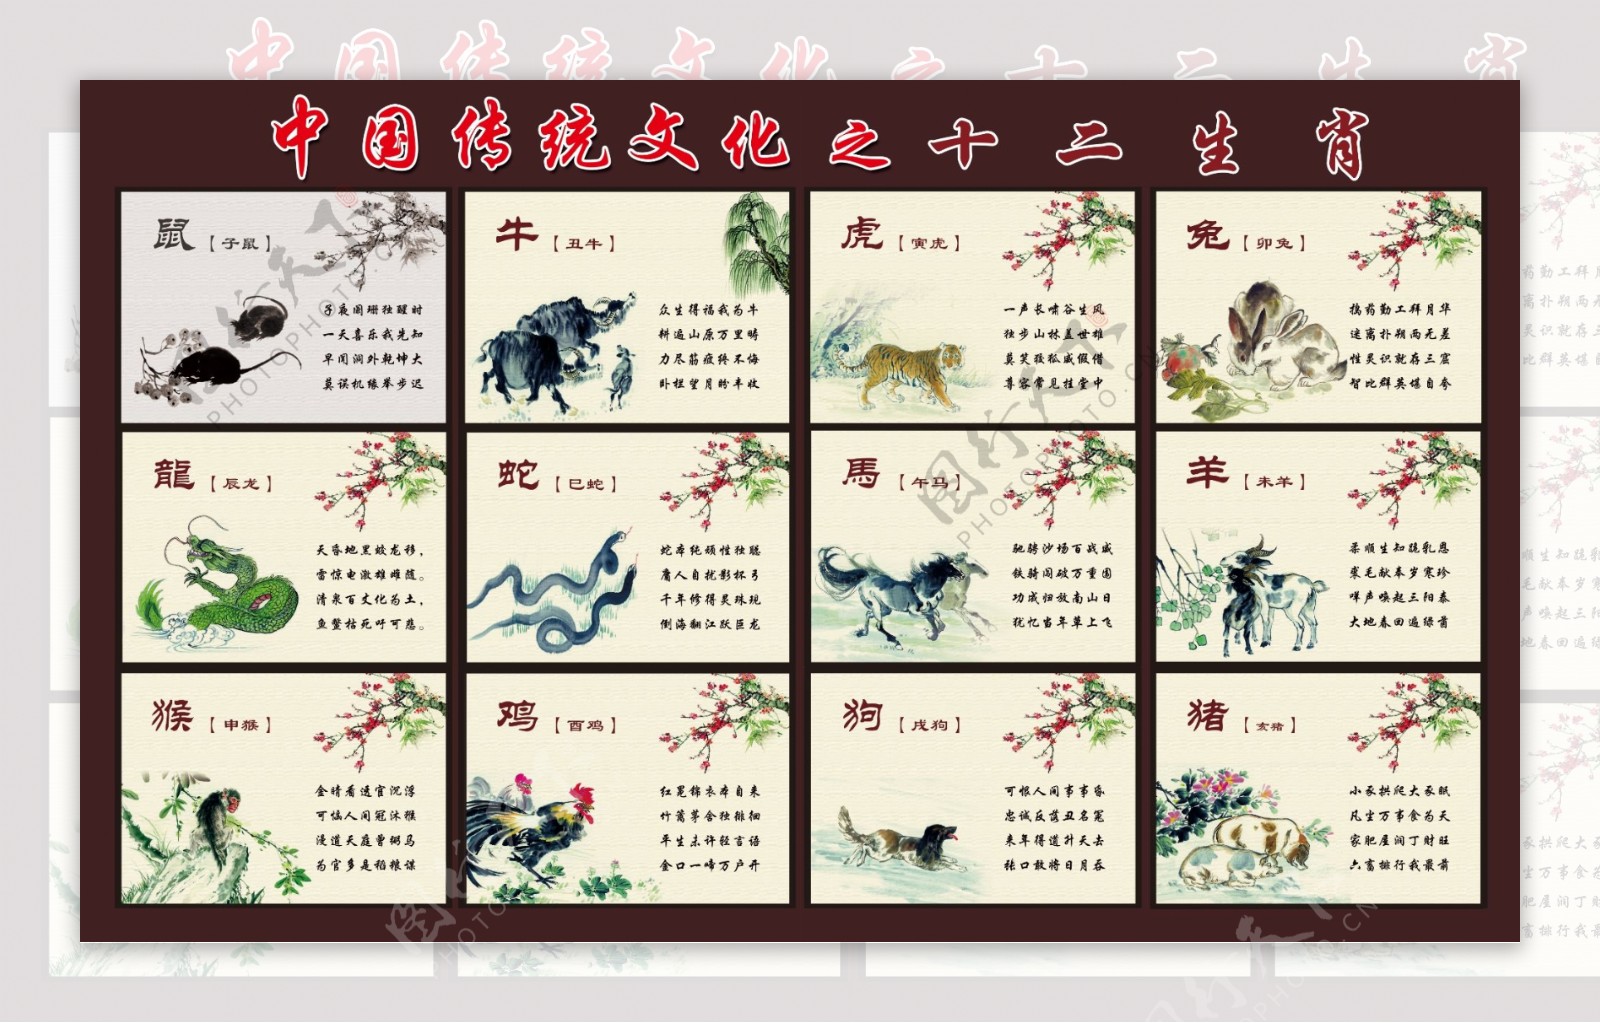 中国传统文化之二十生肖